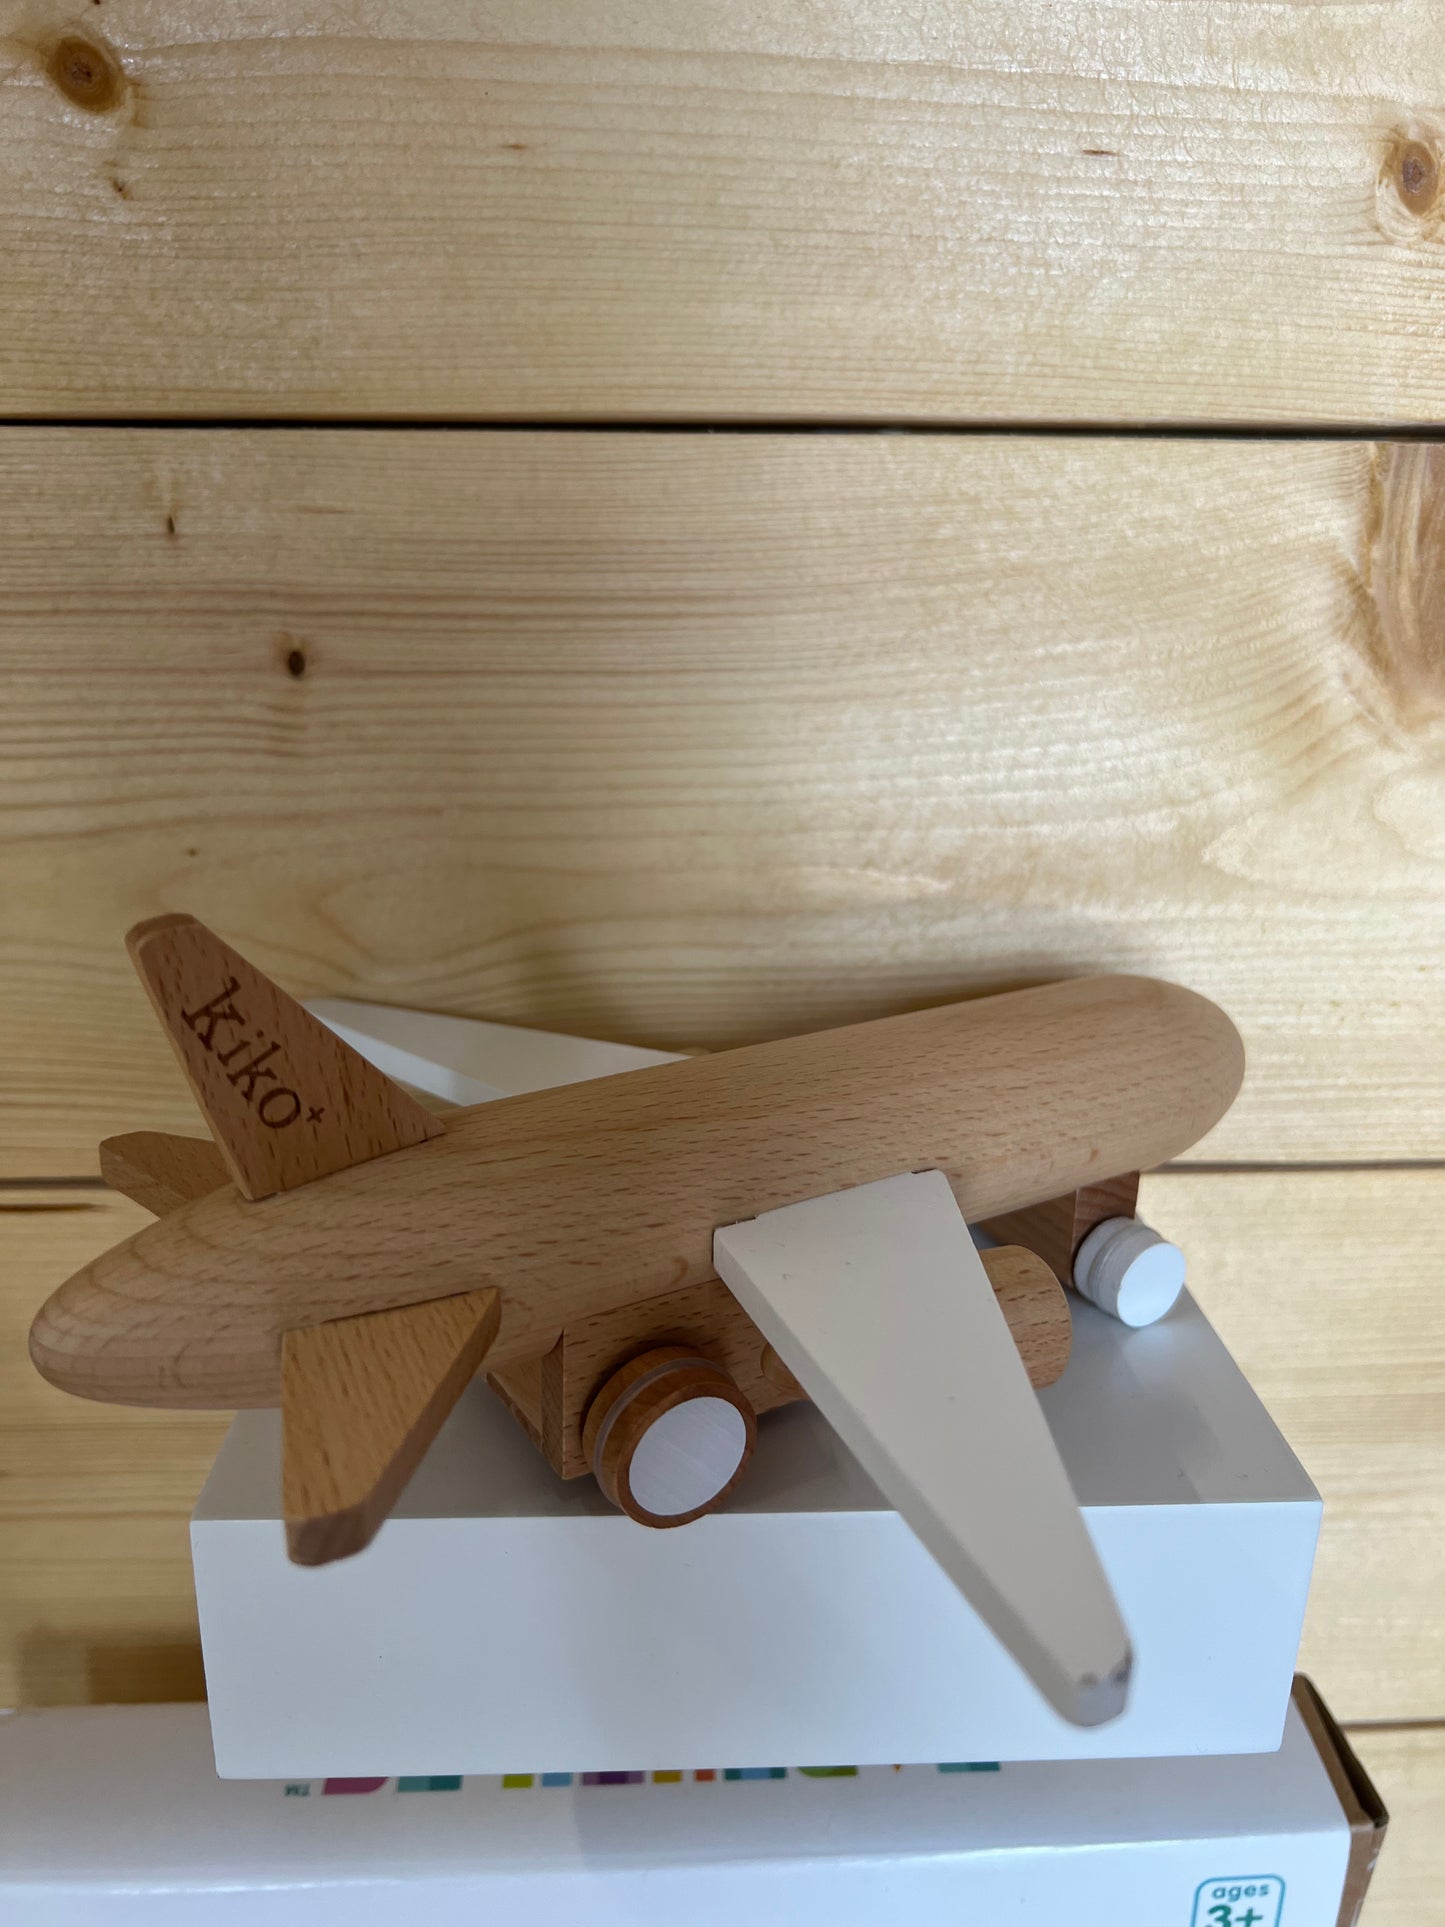 Hikoki Wooden Friction Plane